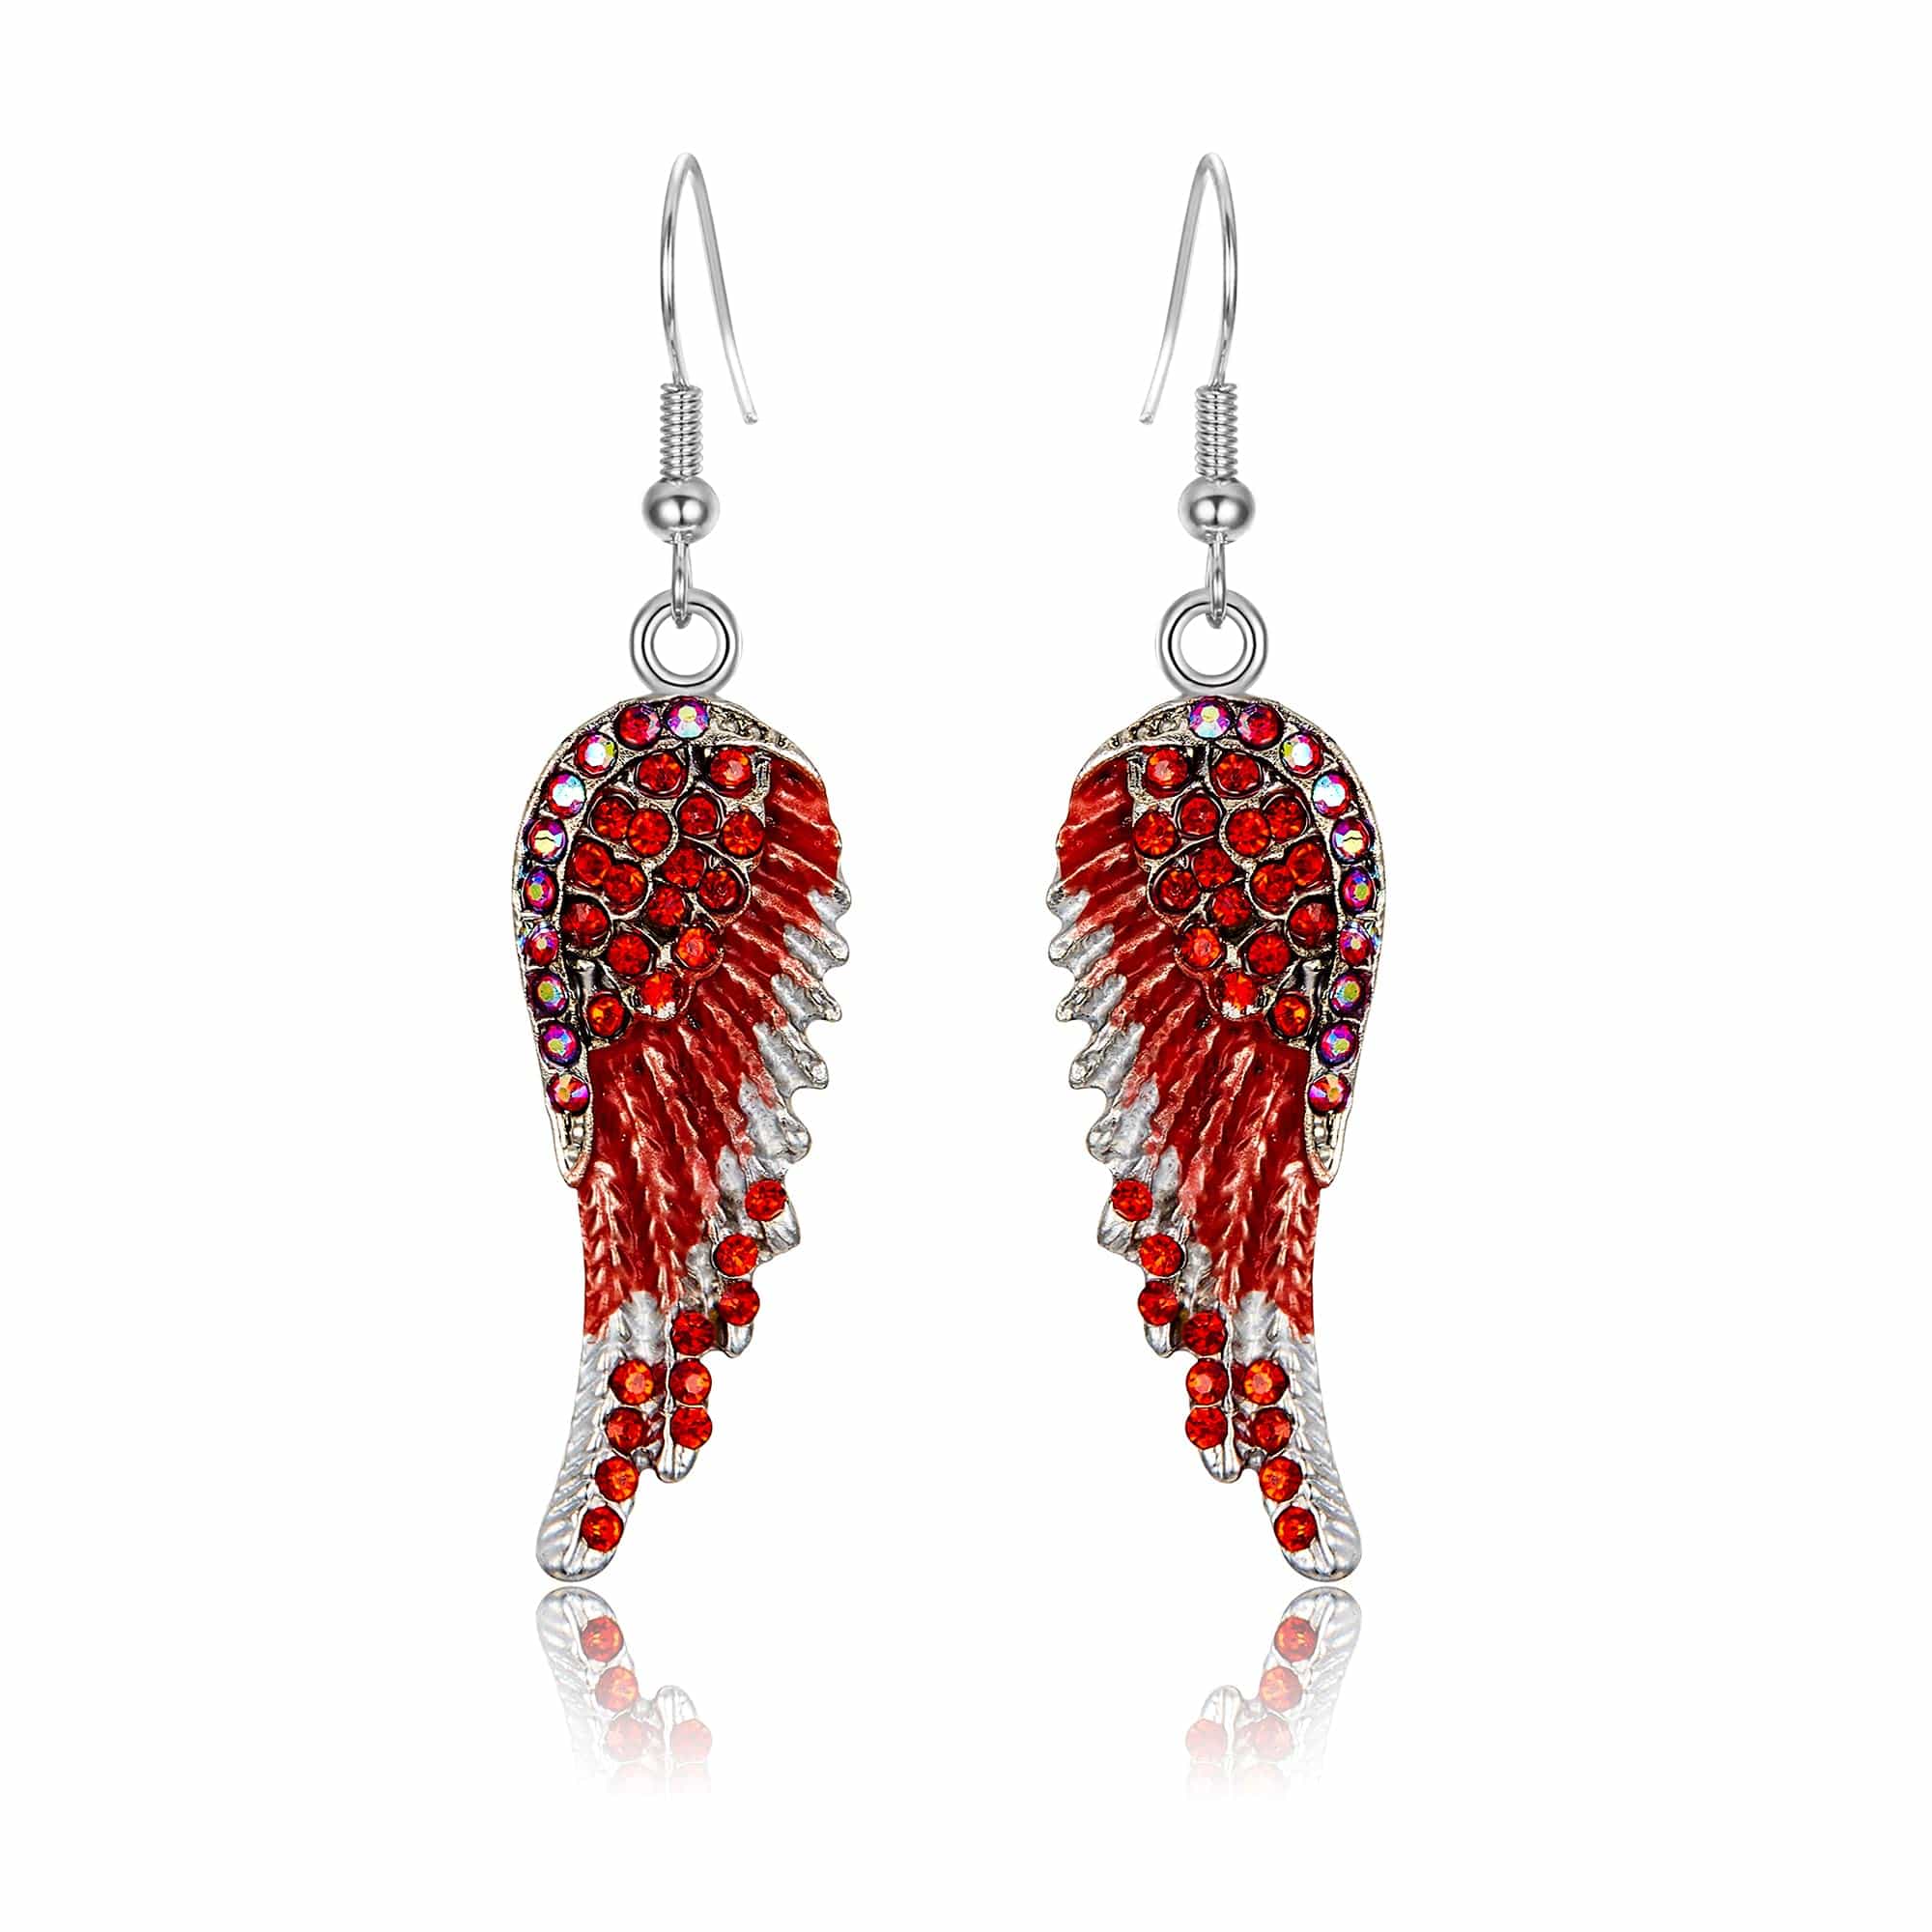 Angel Wing Hook Earrings Austrian Crystal Silver-Tone Red Earring MelodyNecklace